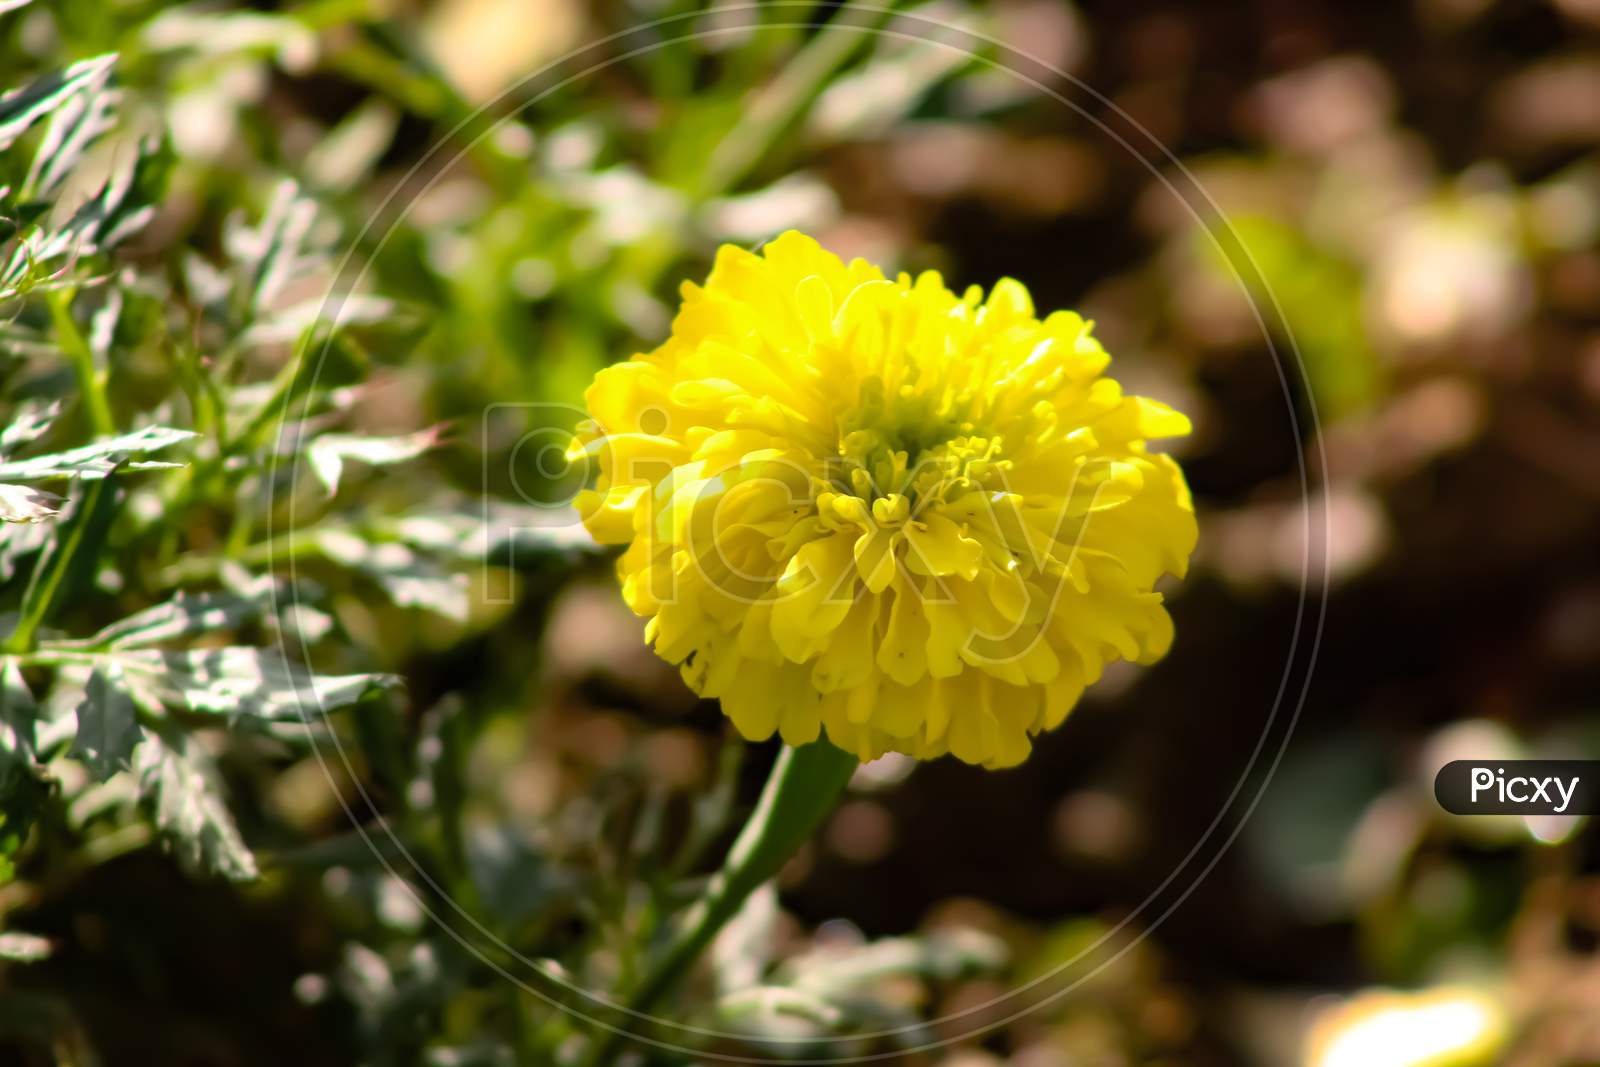 A decent yellow flower